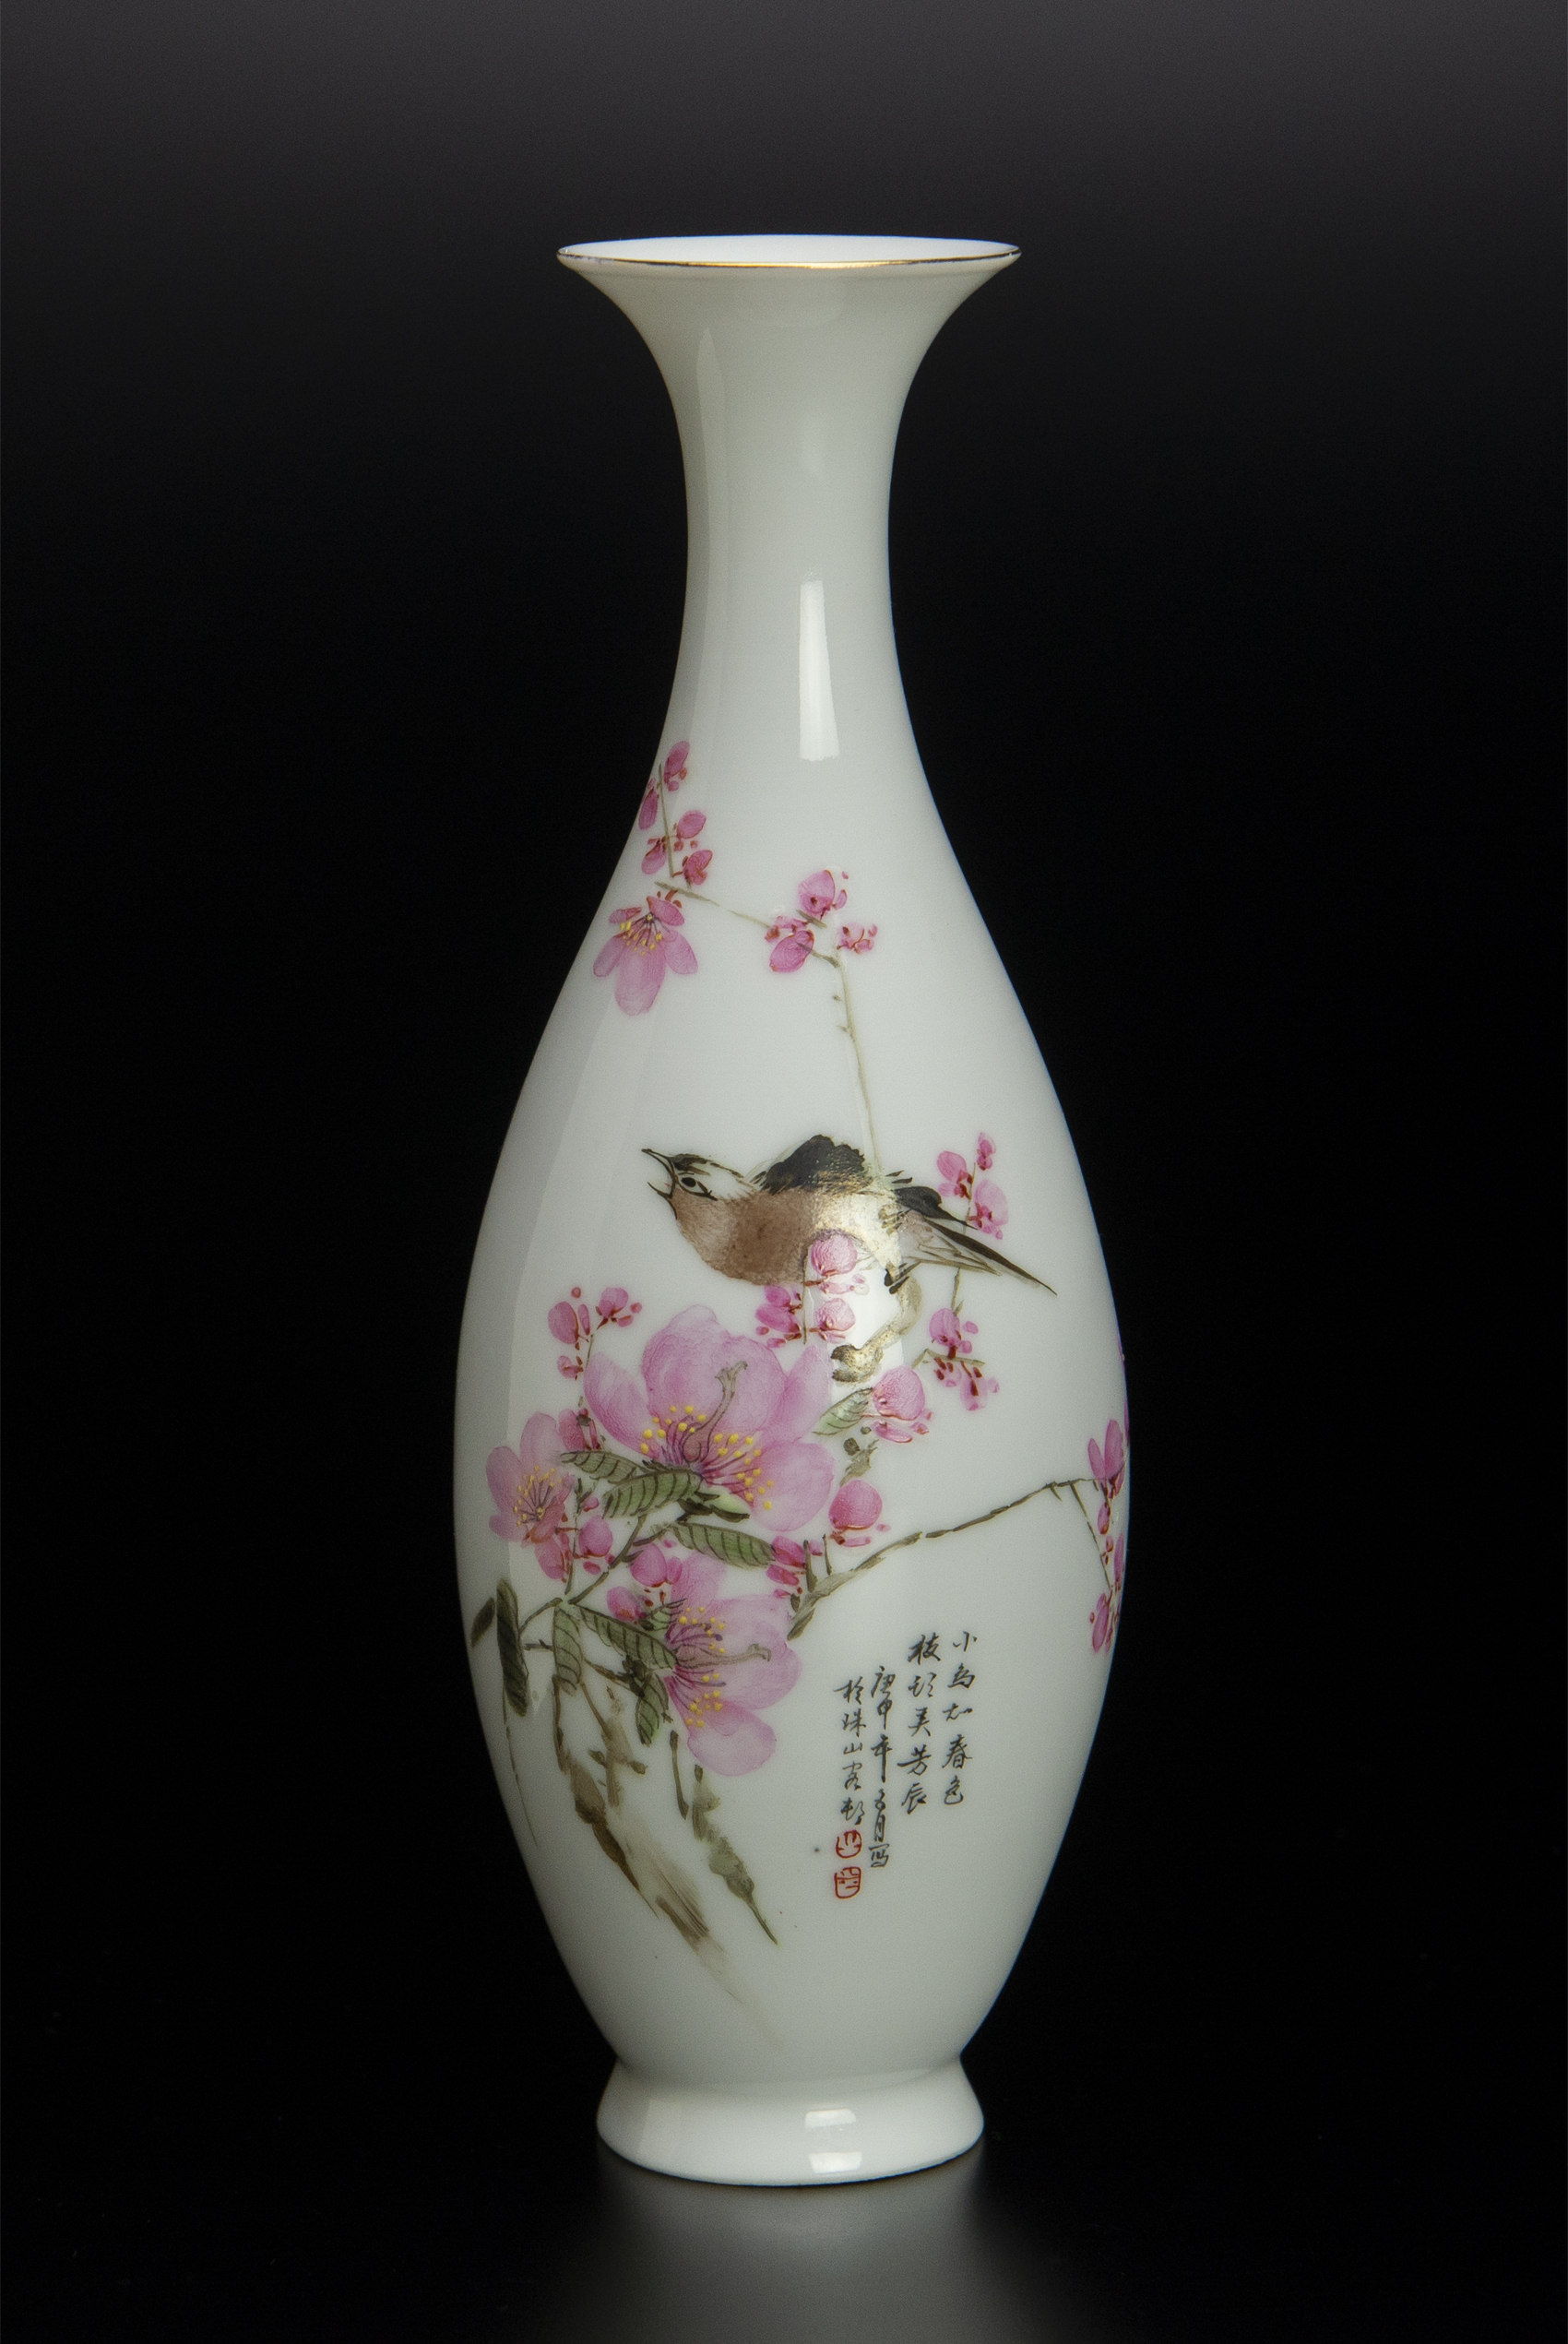 公式買蔵薄胎粉彩花鳥紋瓶 中国景徳鎮制款 中国 古美術 清